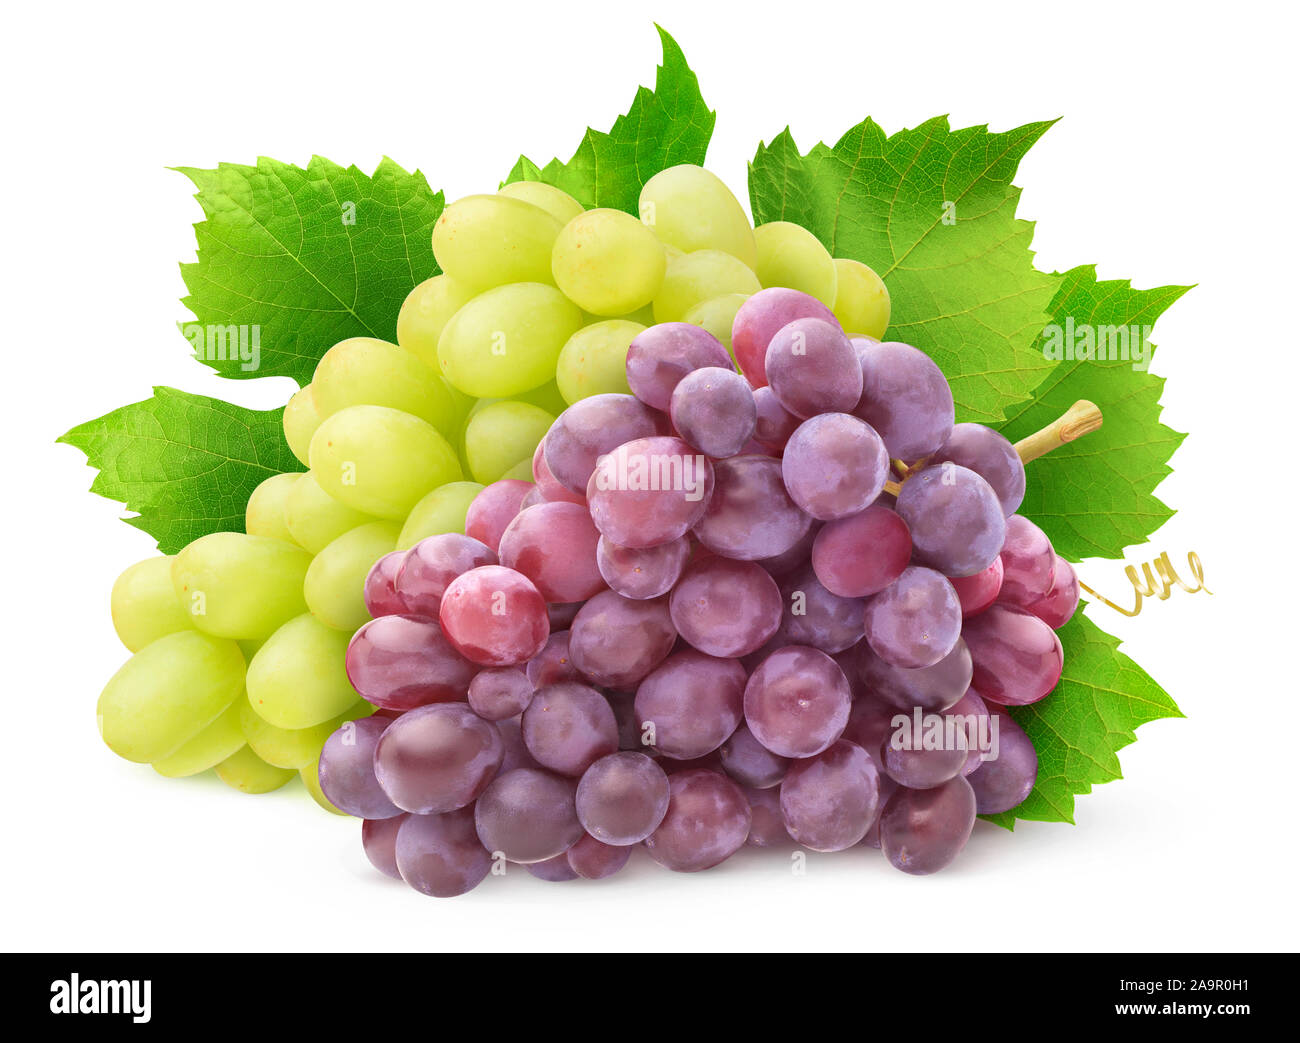 Variedades de uva aislados. Racimo de uvas blancas y rojas con hojas aislado sobre fondo blanco con trazado de recorte Foto de stock